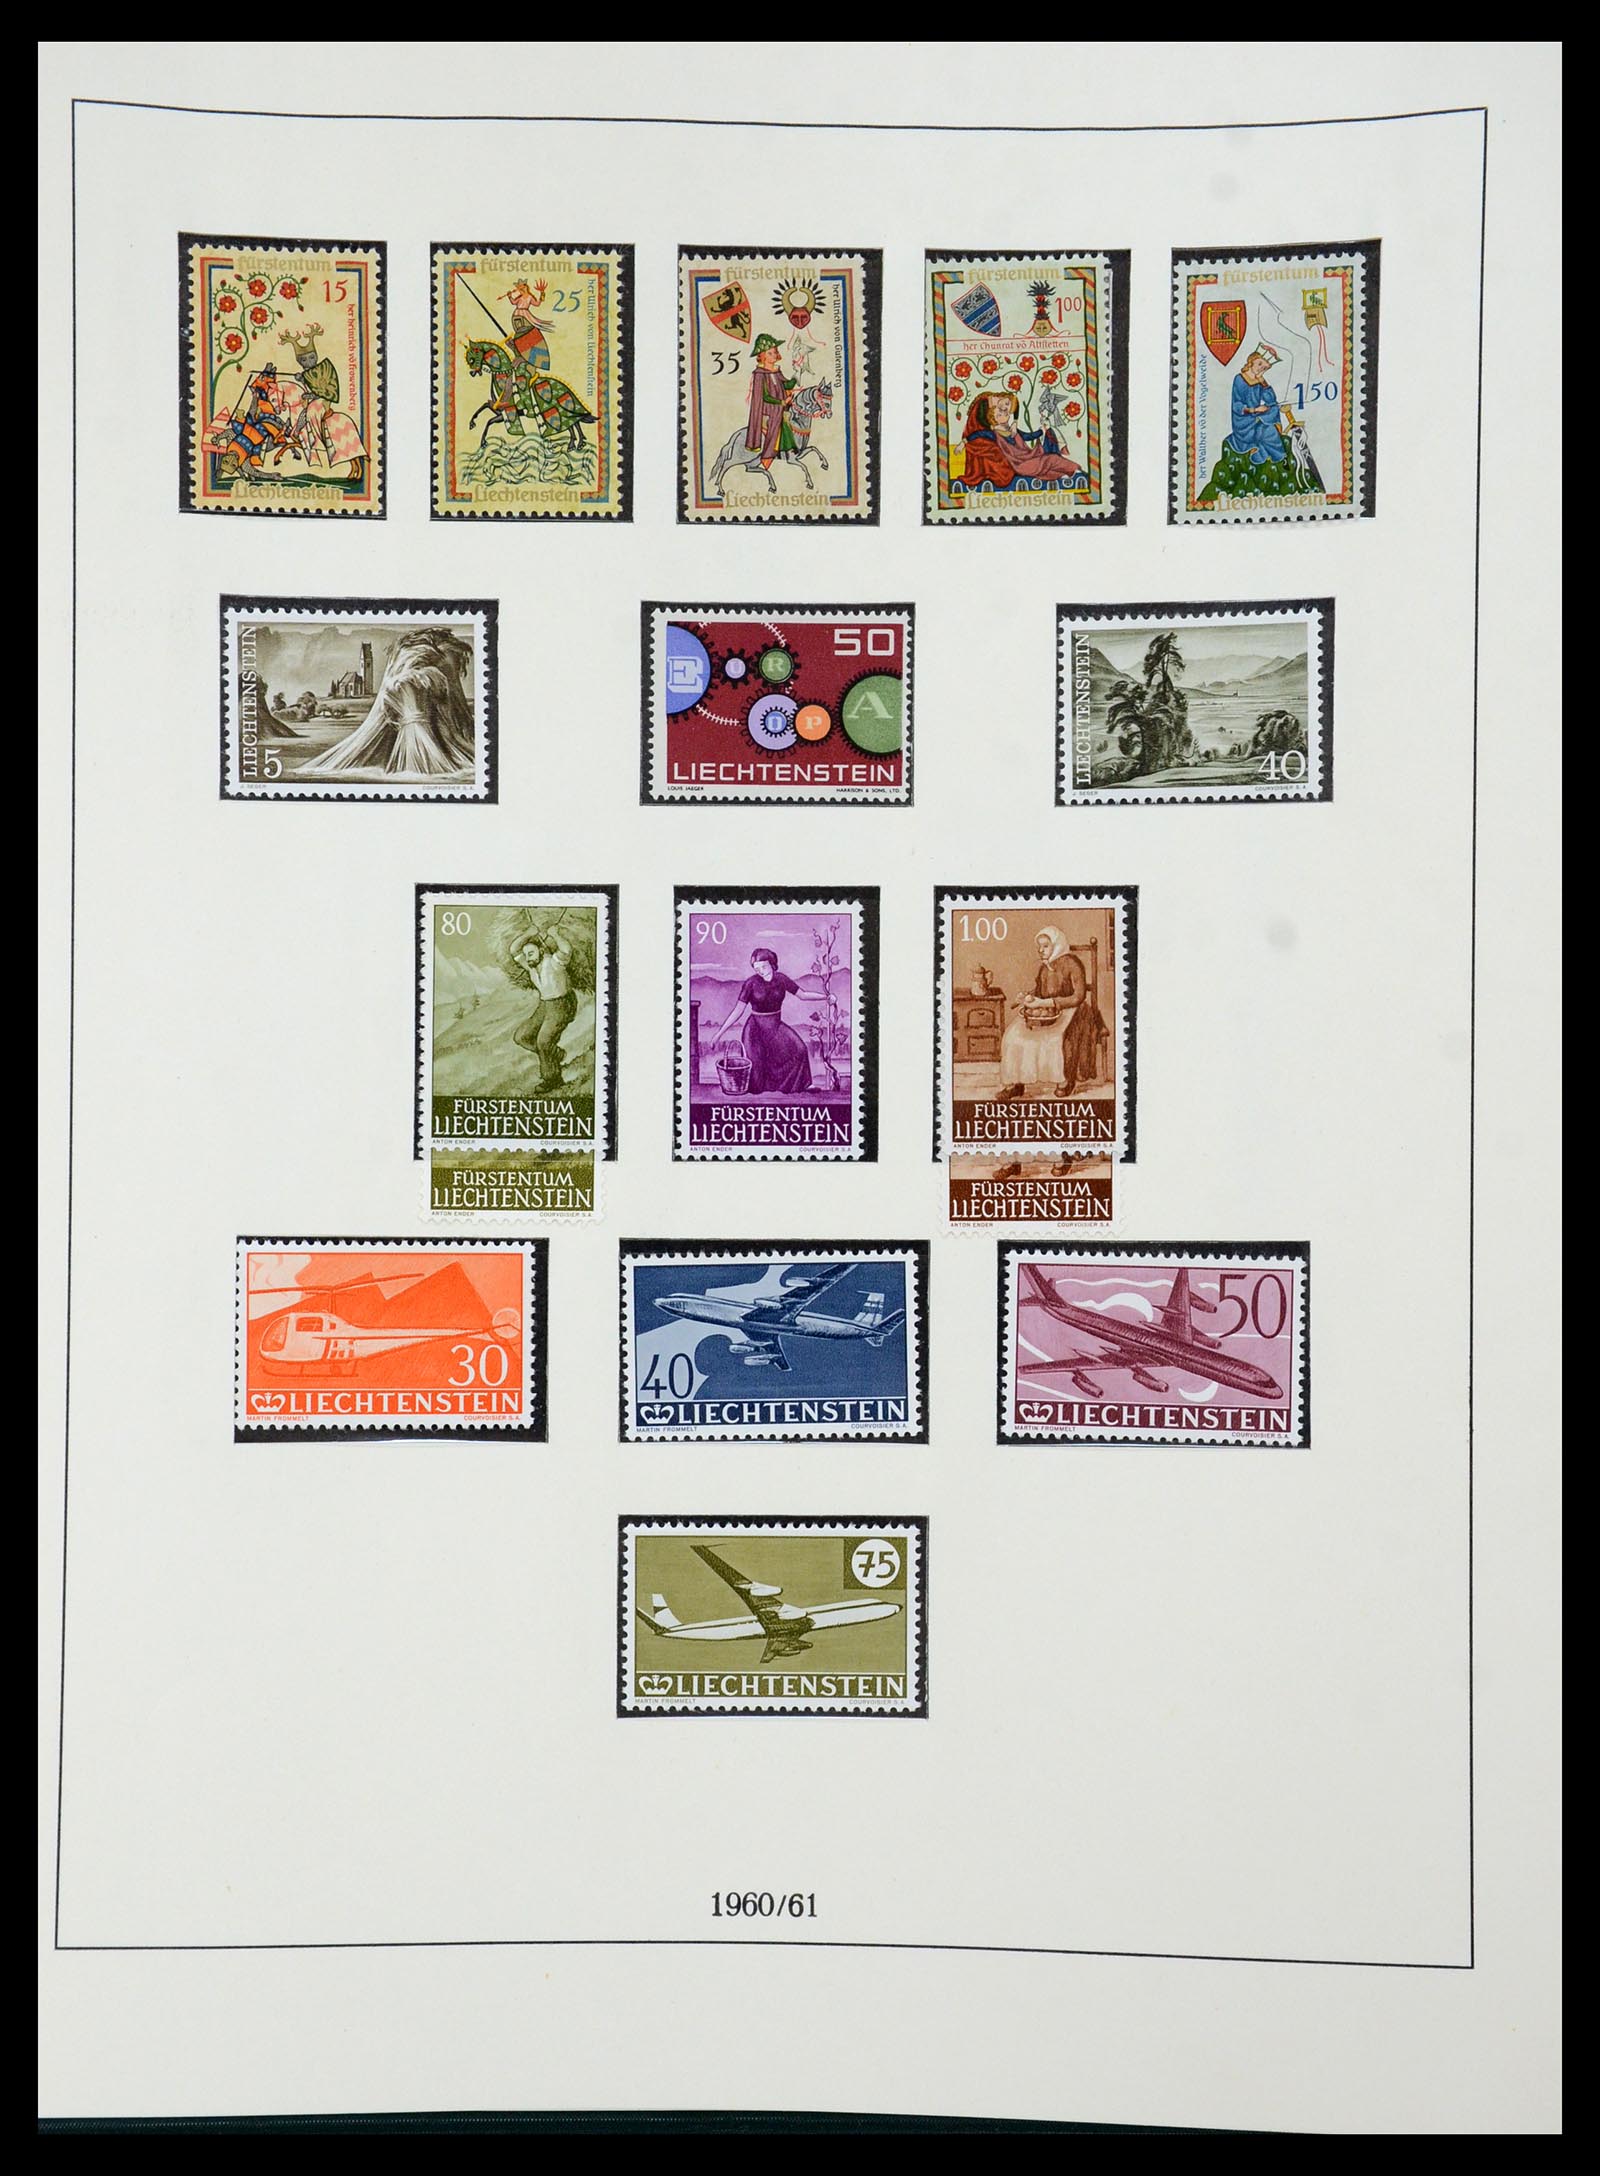 36358 035 - Stamp collection 36358 Liechtenstein 1912-1971.